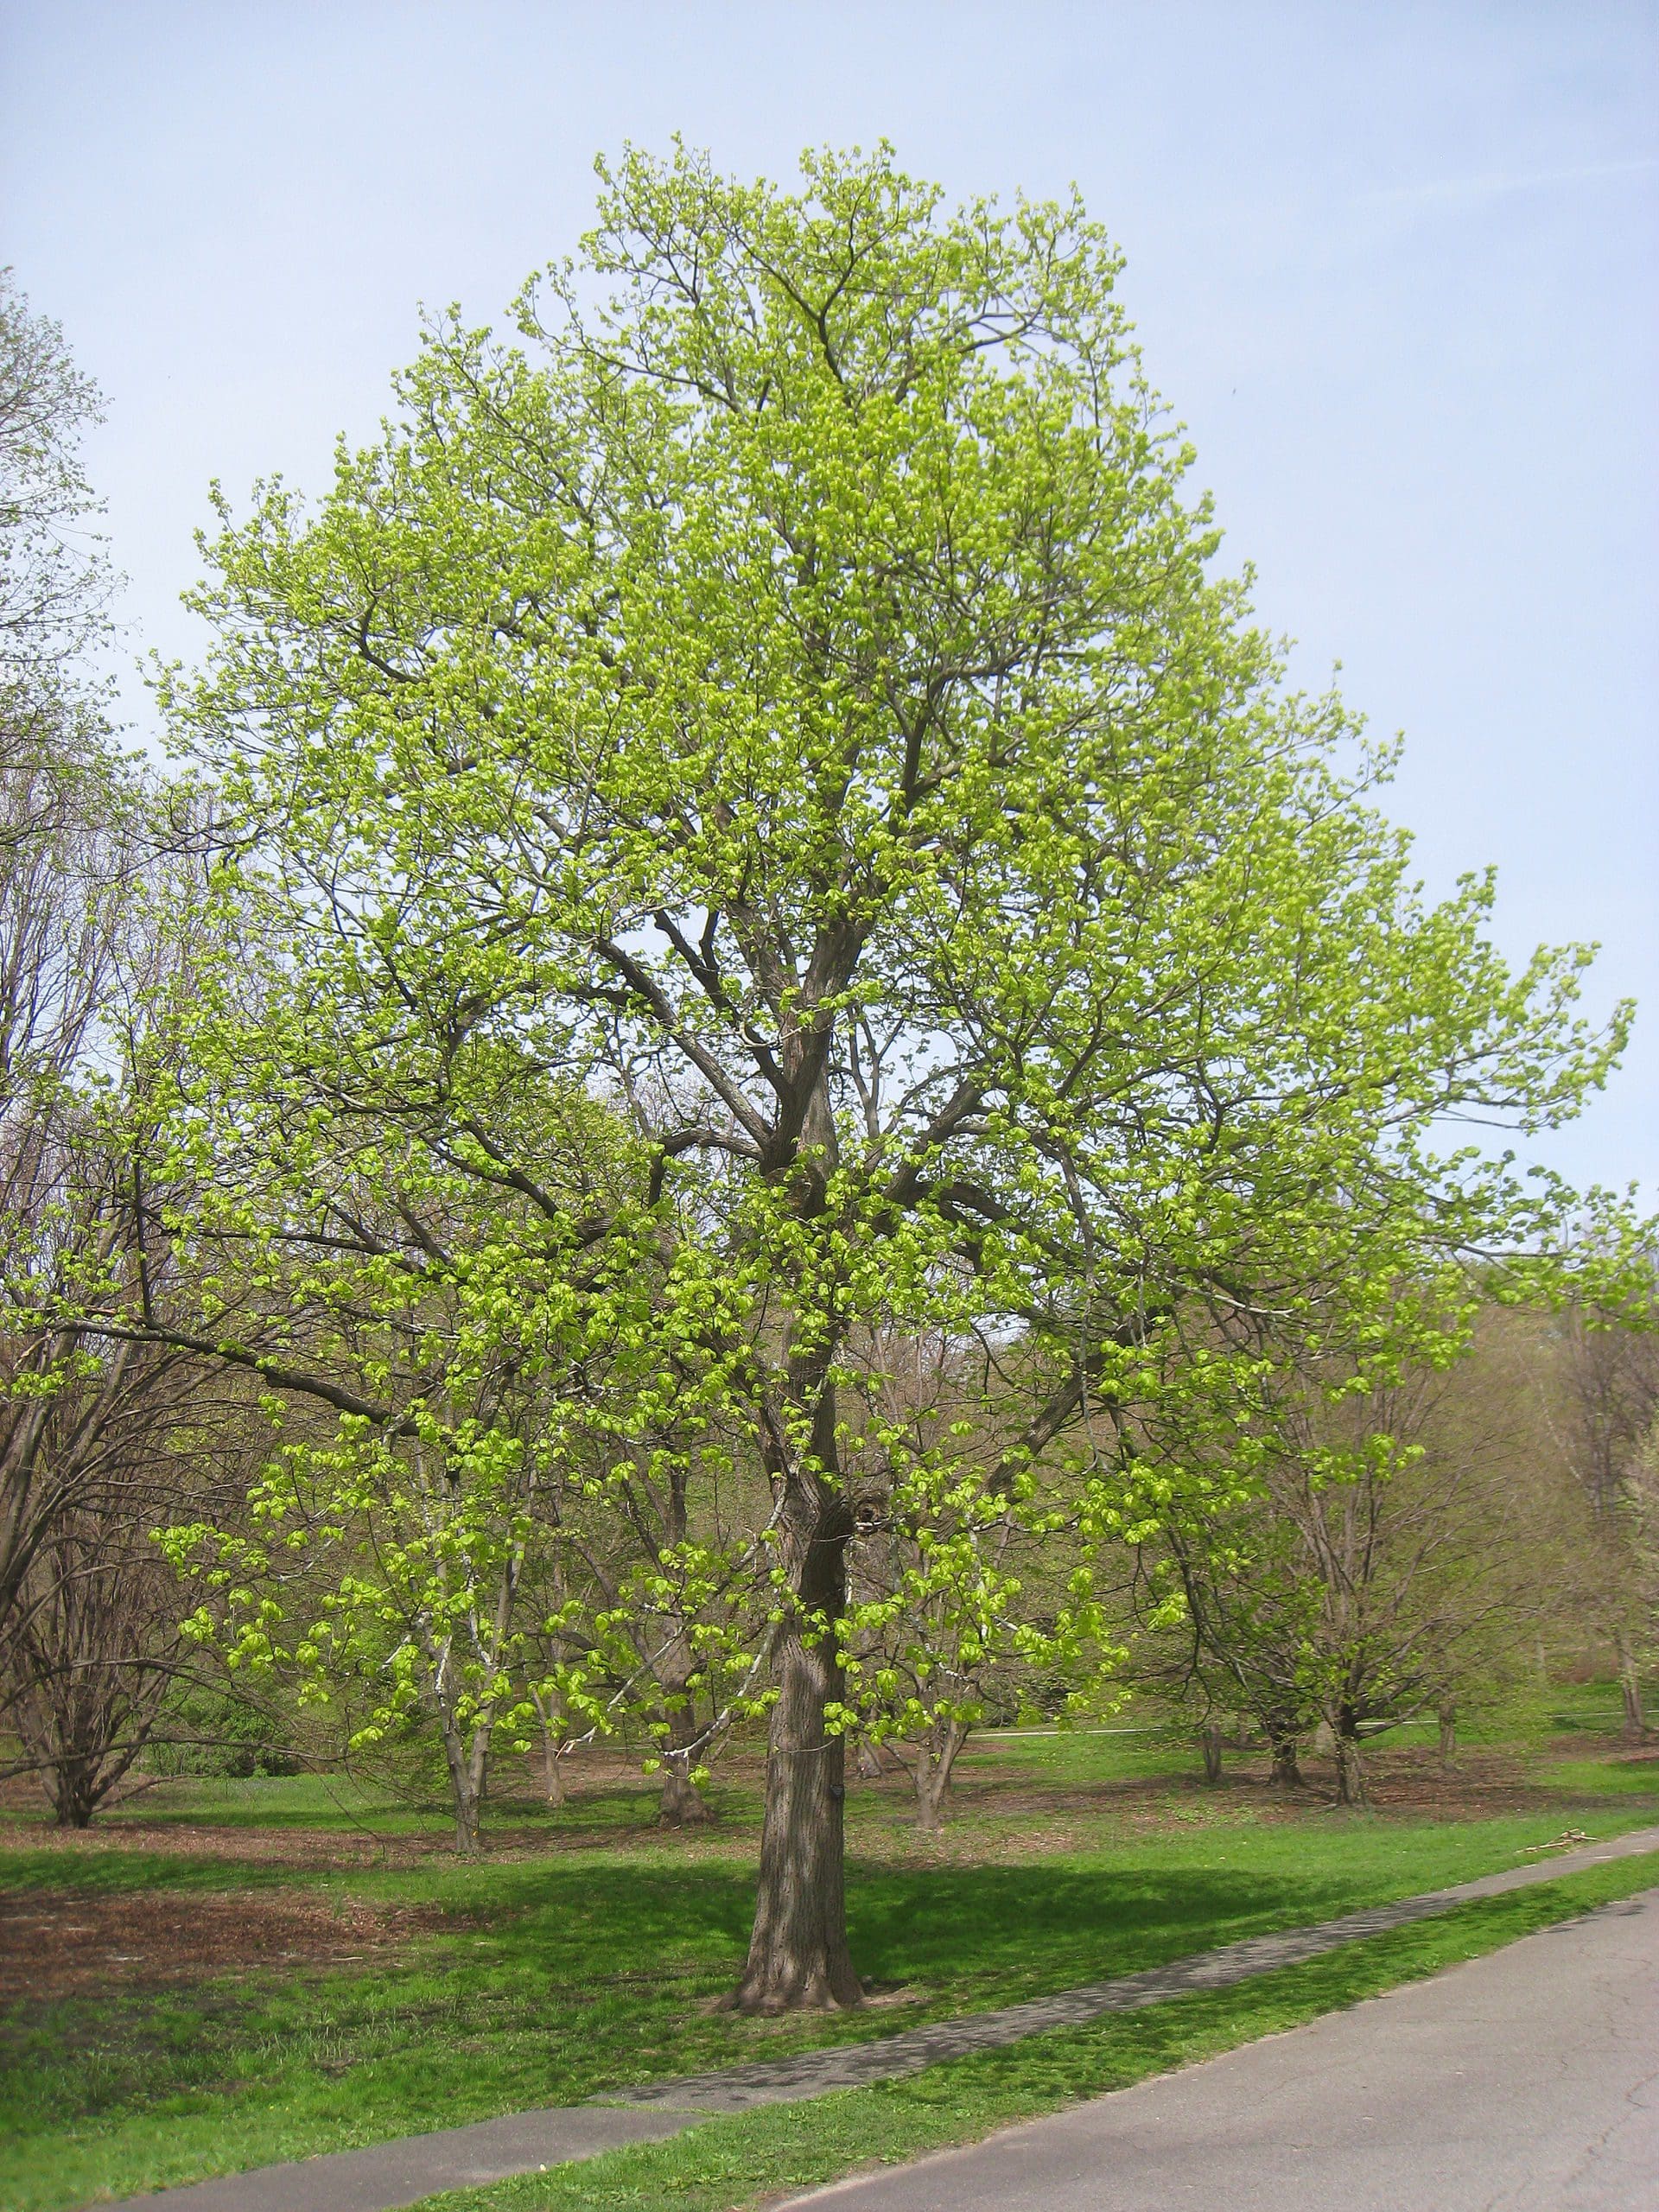 Shade tree - Wikipedia